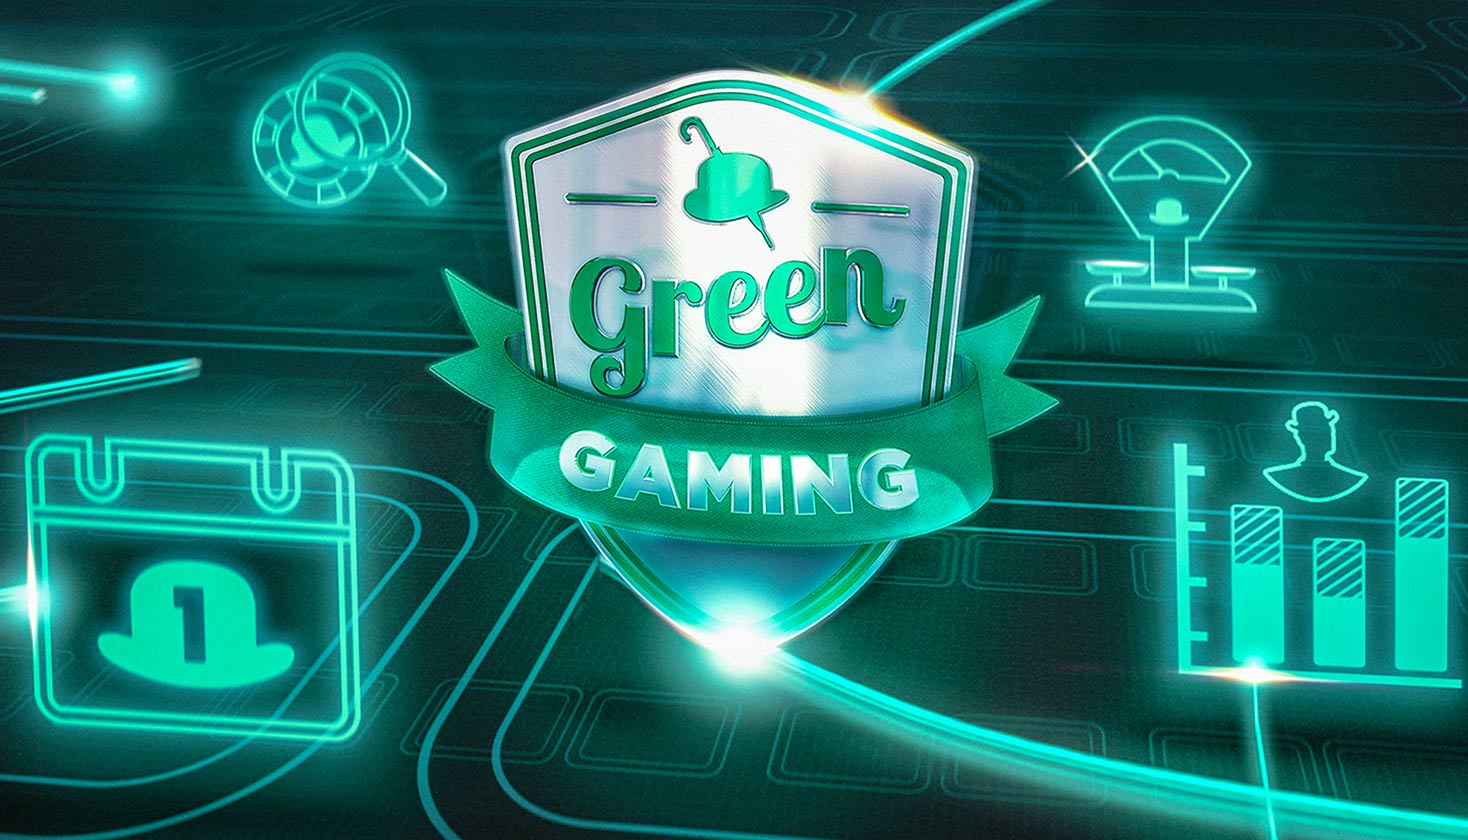 Green Gaming - Juego responsable con Mr Green